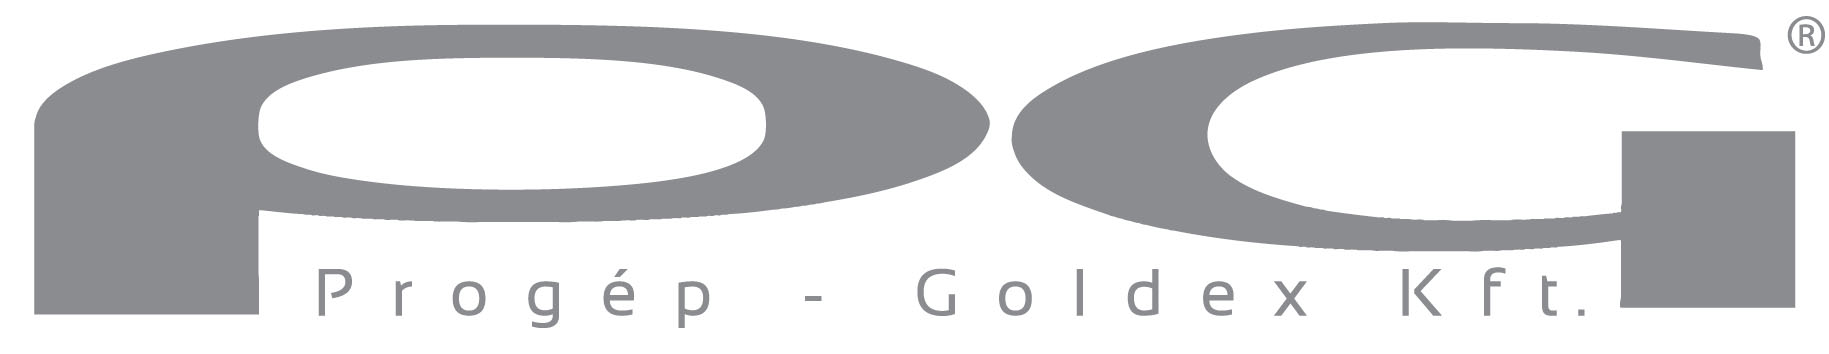 PG logo rgb grey